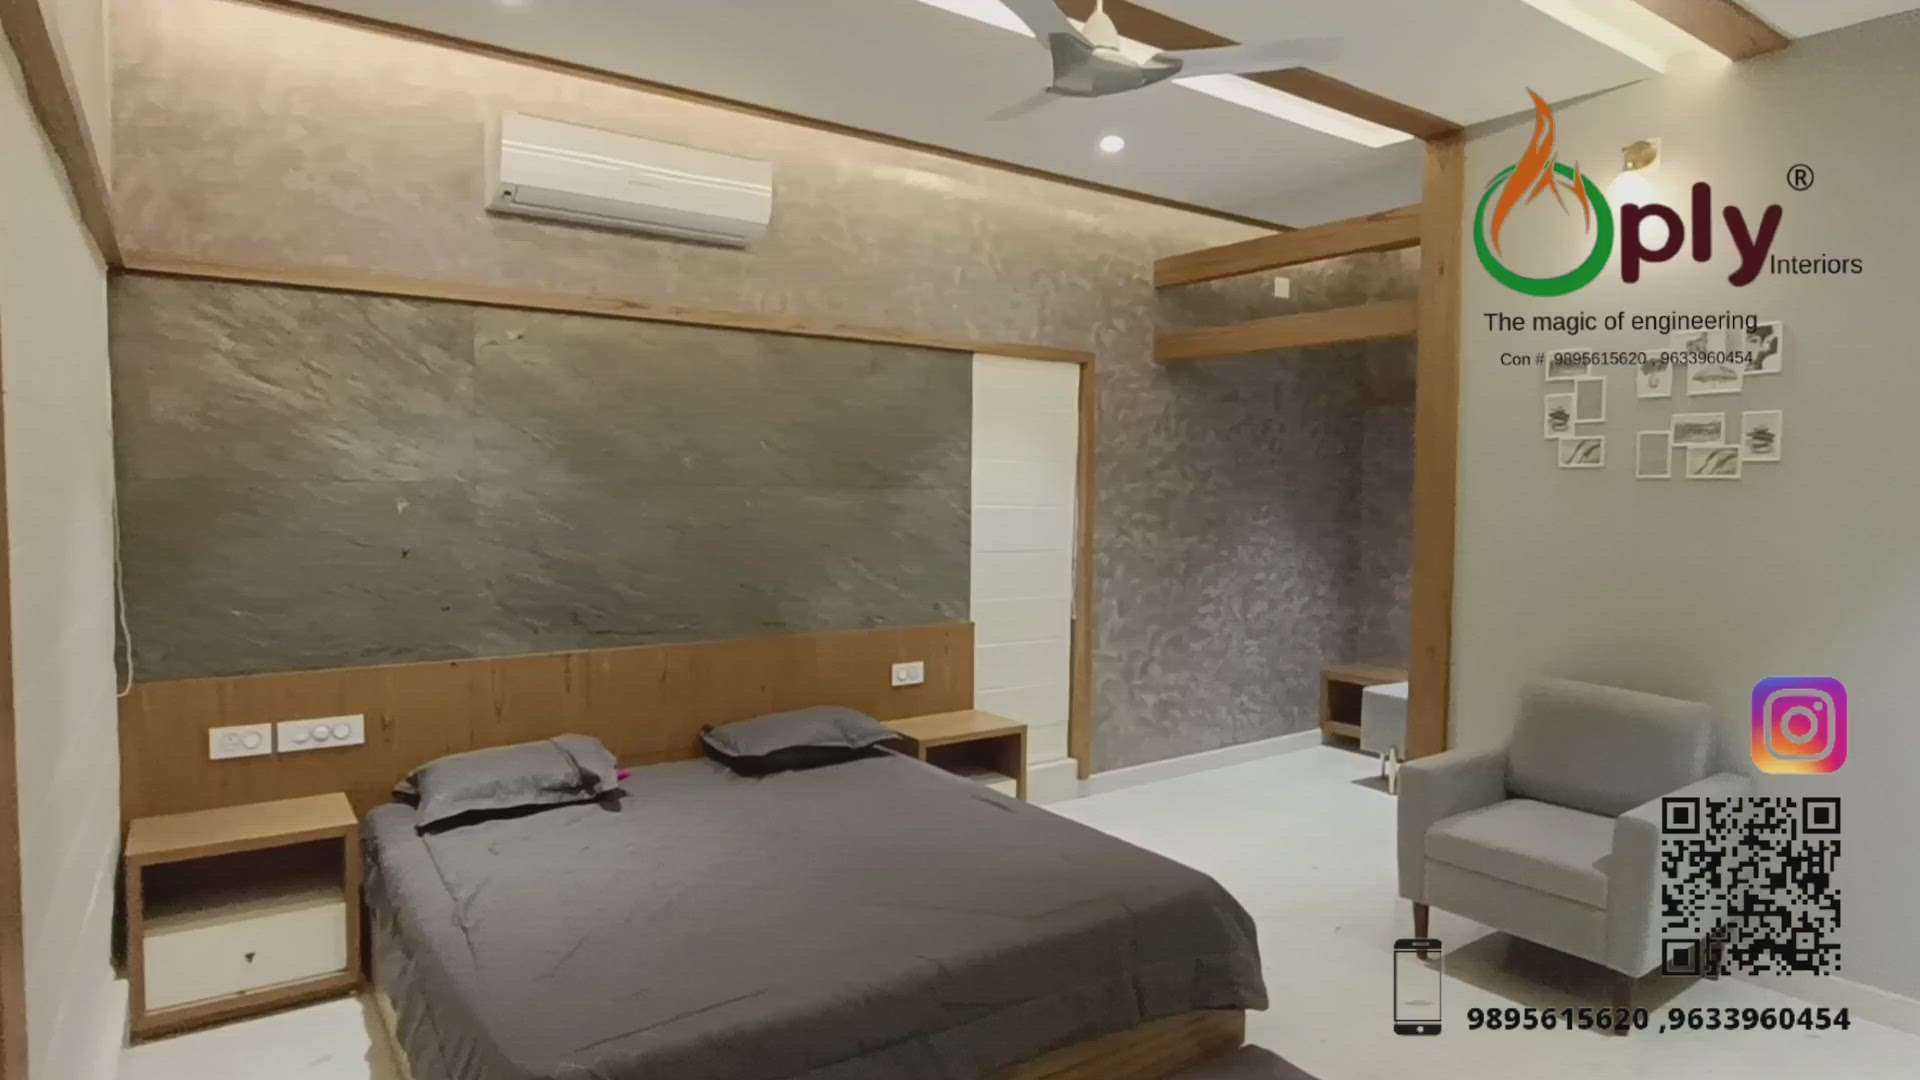 #BedroomDecor #MasterBedroom #KingsizeBedroom #BedroomDesigns #oplyinteriors  #khusaikaliyath